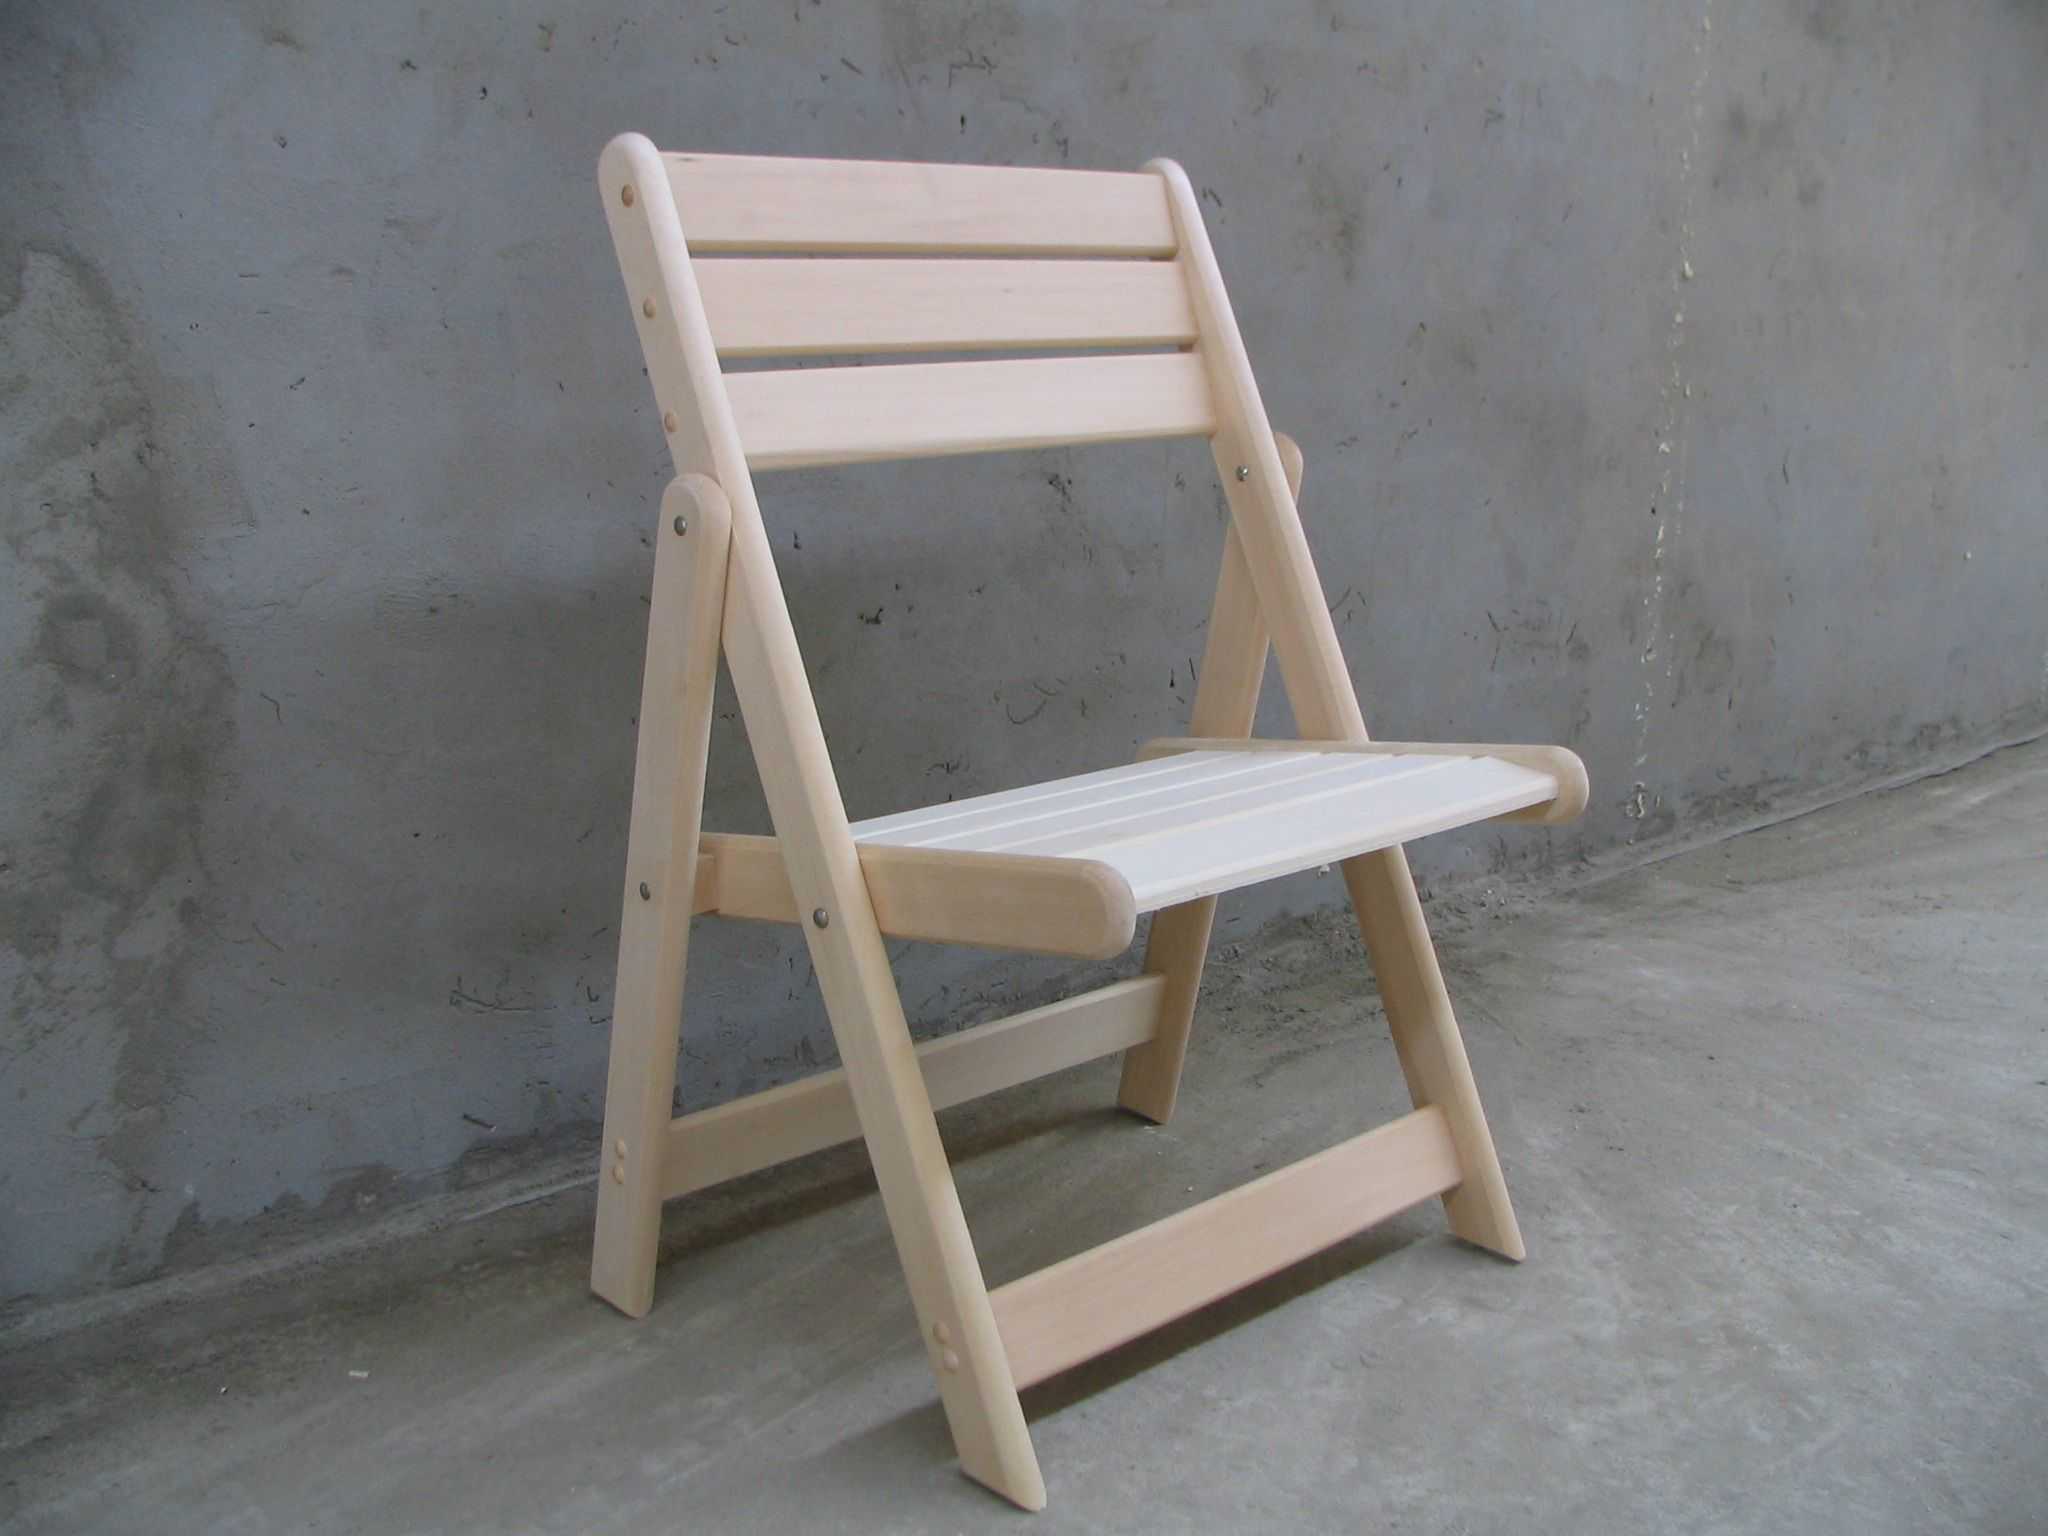 Как сделать детский деревянный стульчик